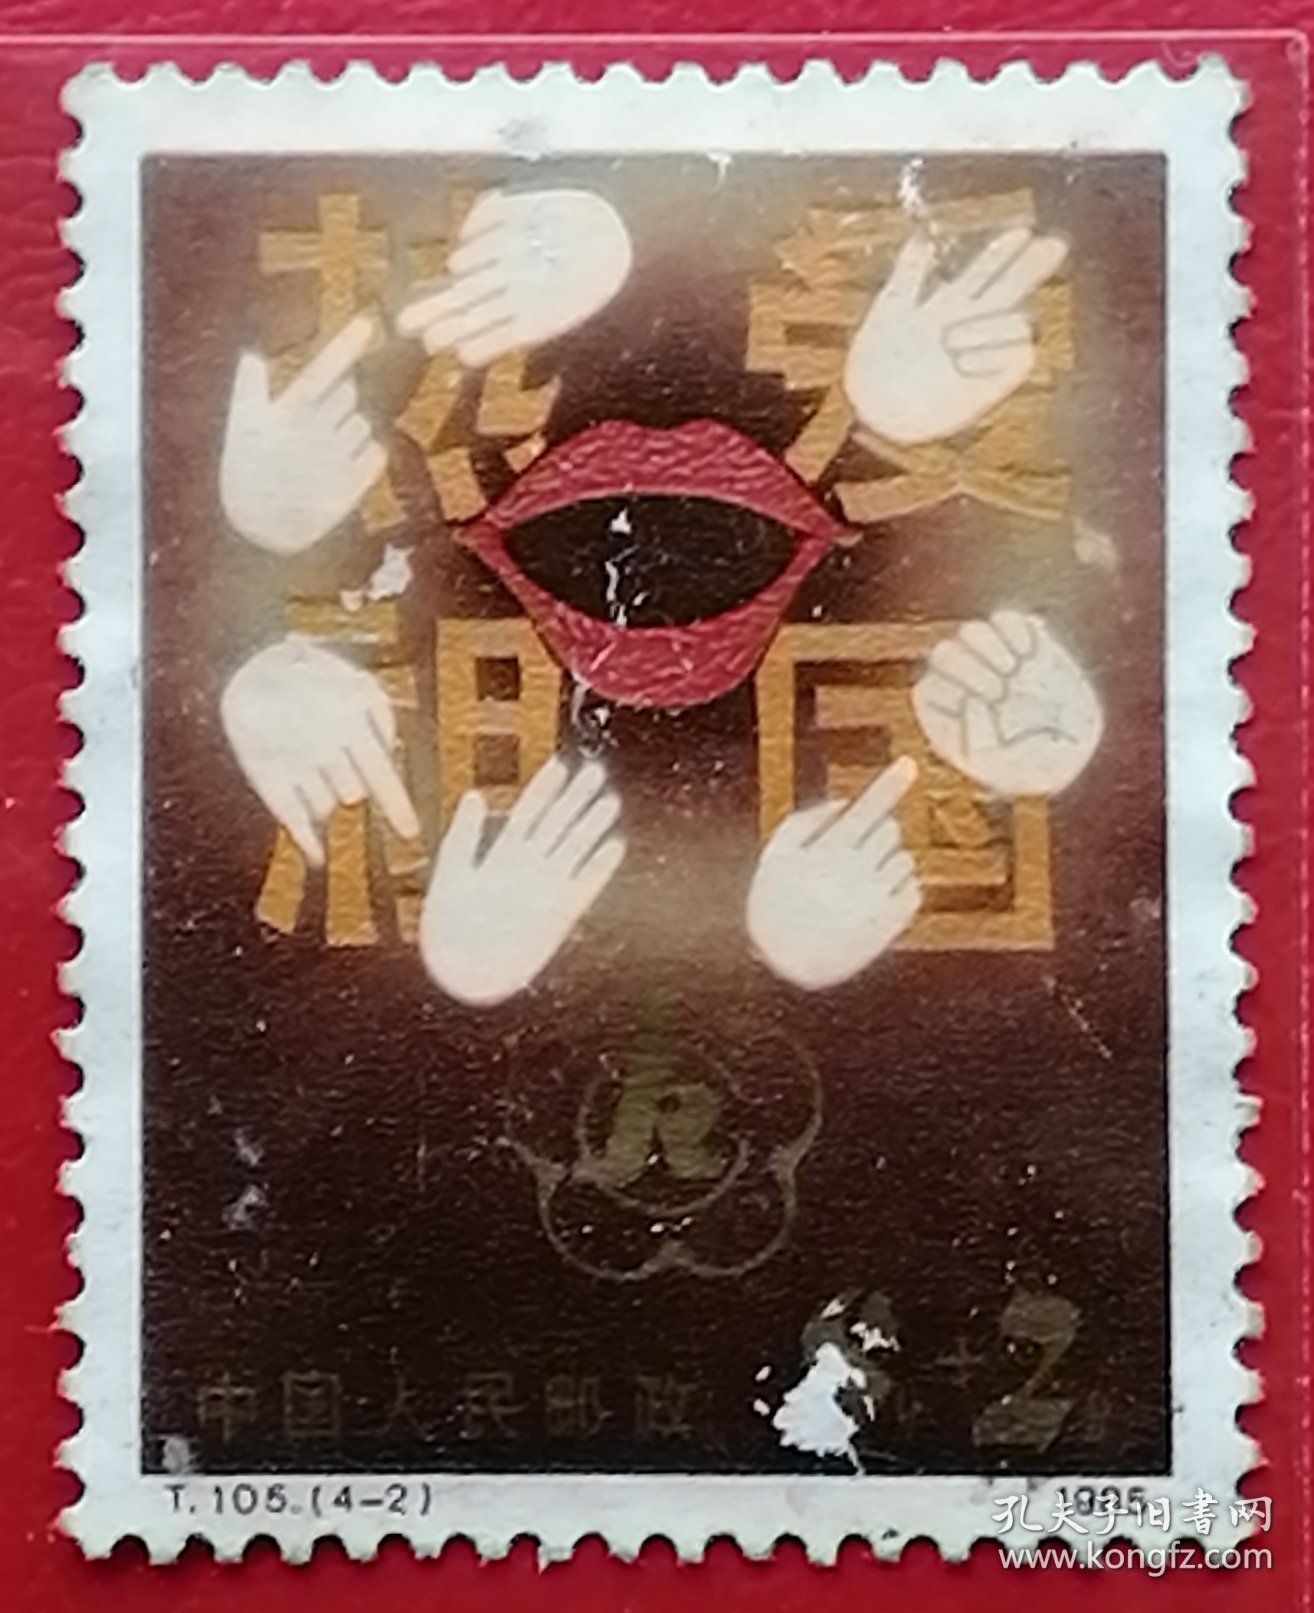 中国邮票 t105 1985年 发行量747万 残疾人附捐邮票 4-2 信销